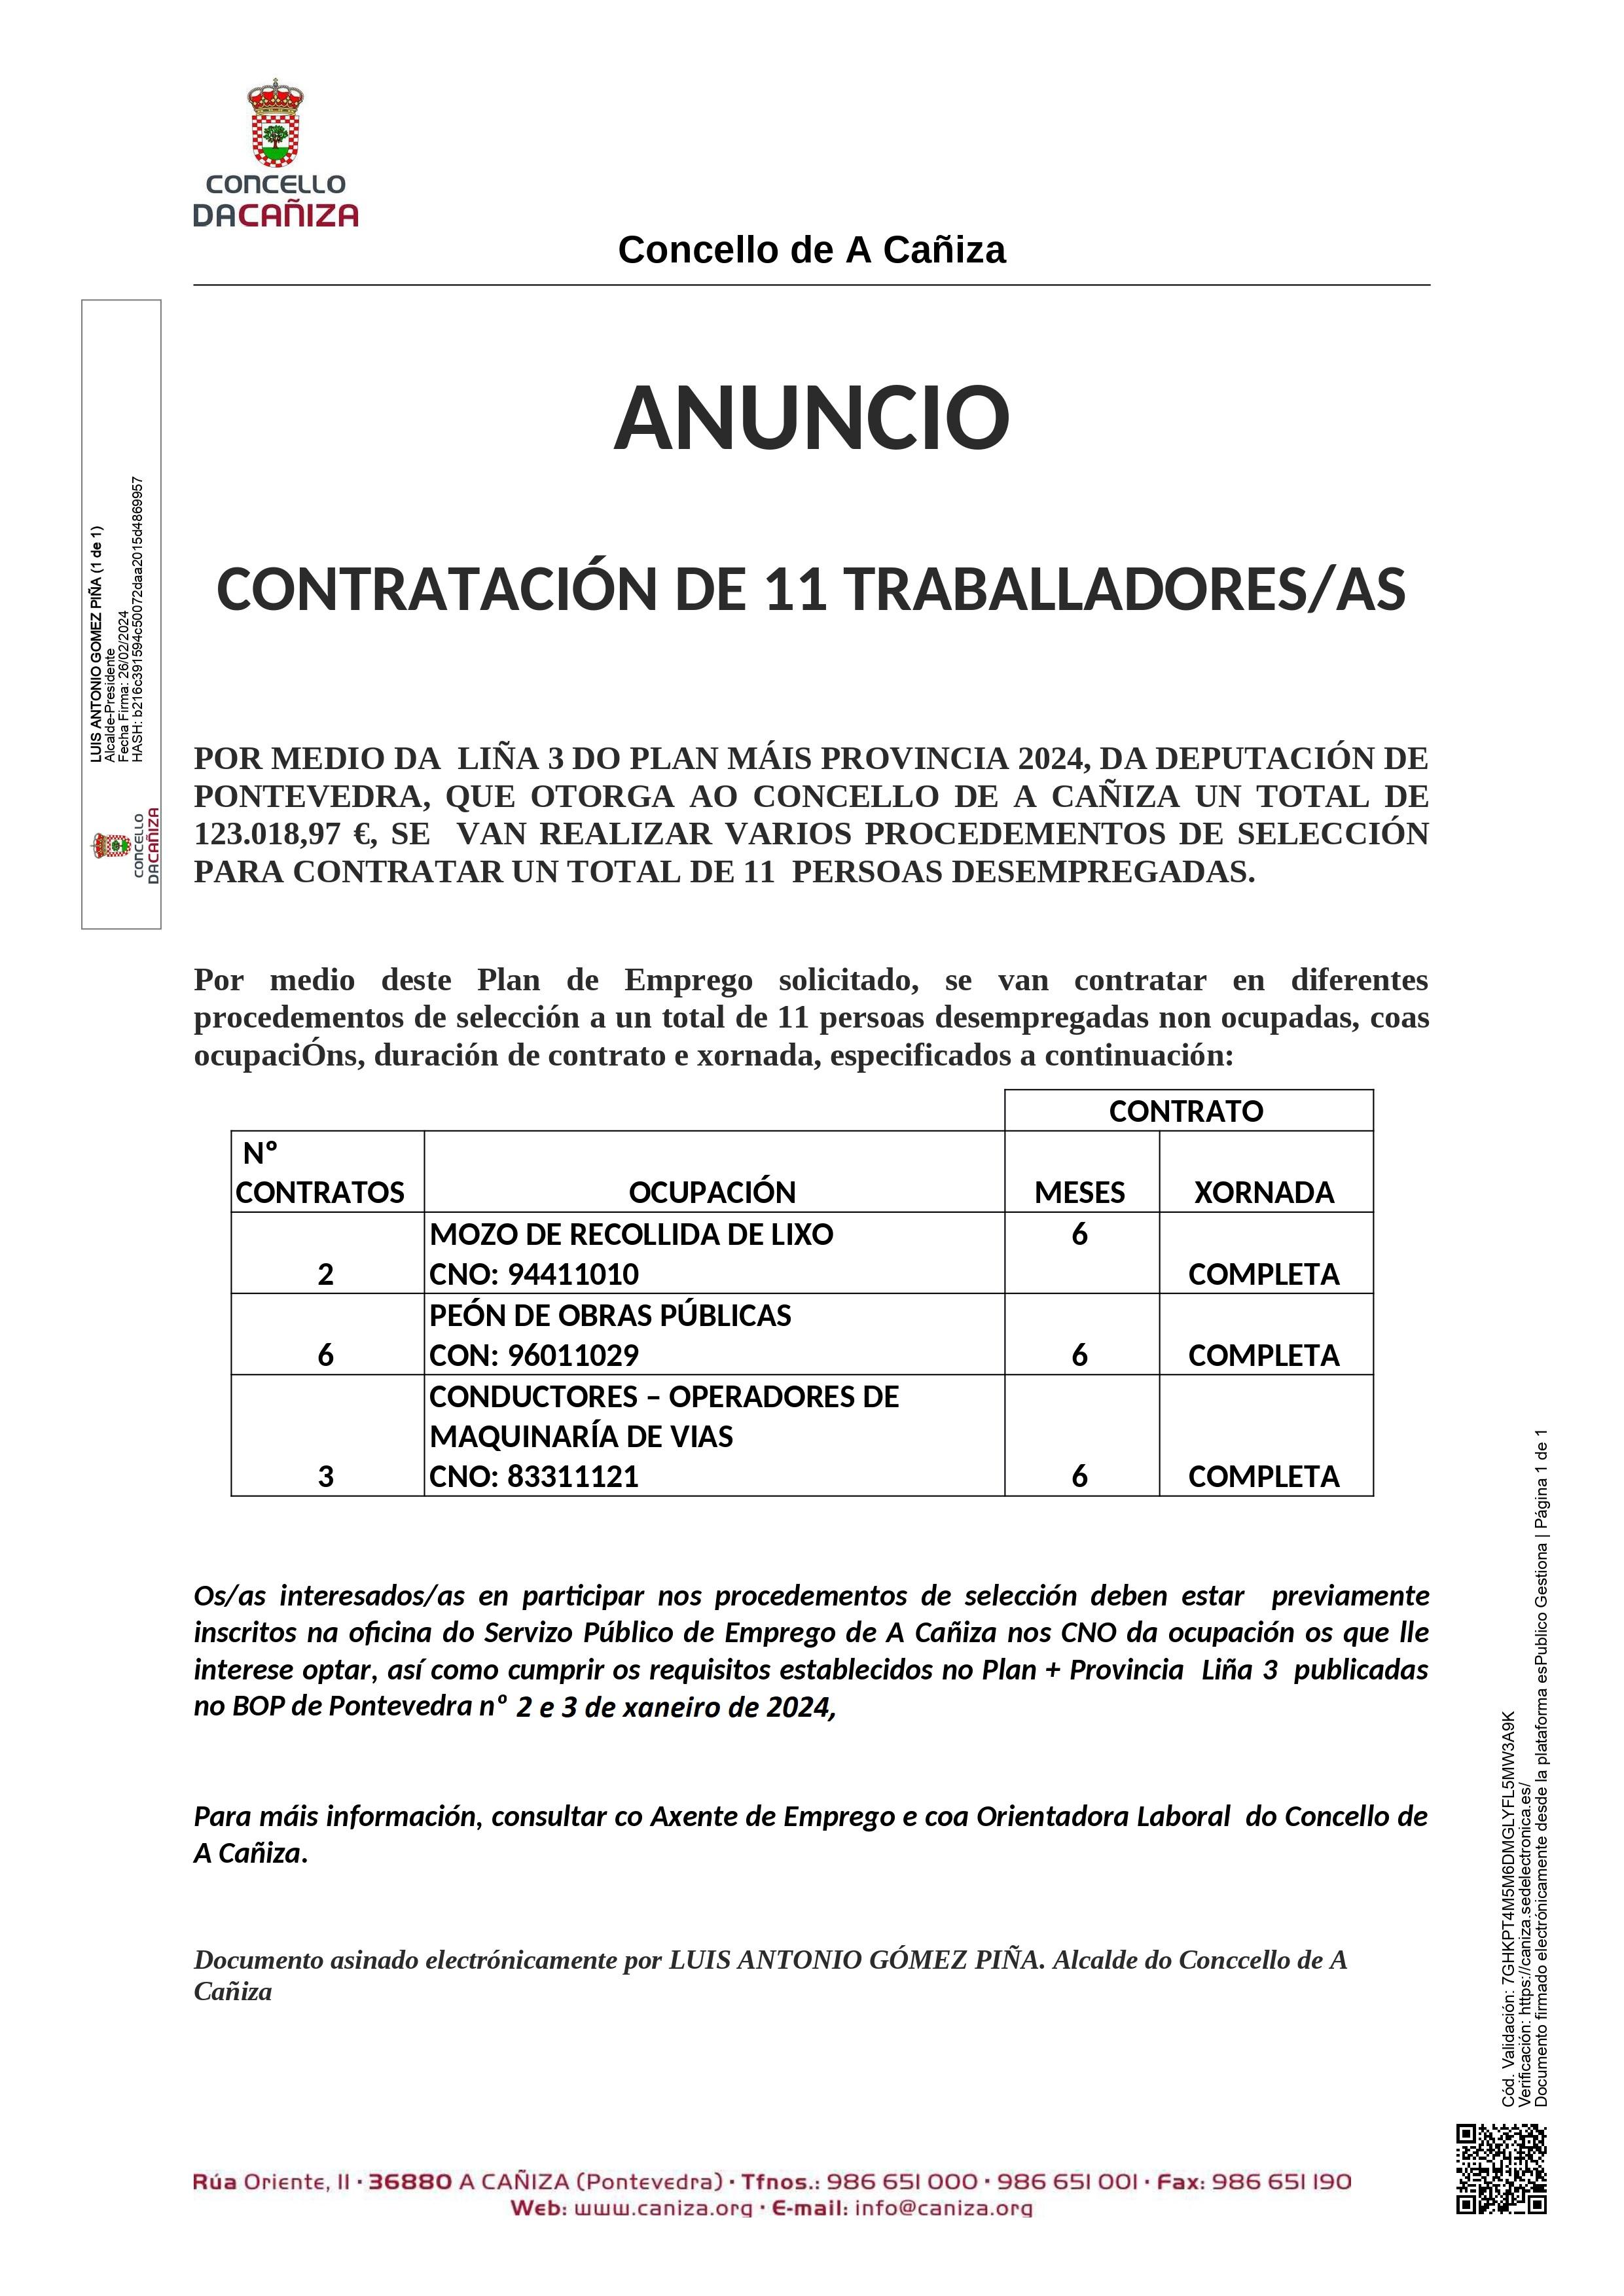 O Concello contratará neste ano a 11 traballadores, ao abeiro da liña 3 de axudas do plan «+ Provincia» da Deputación de Pontevedra